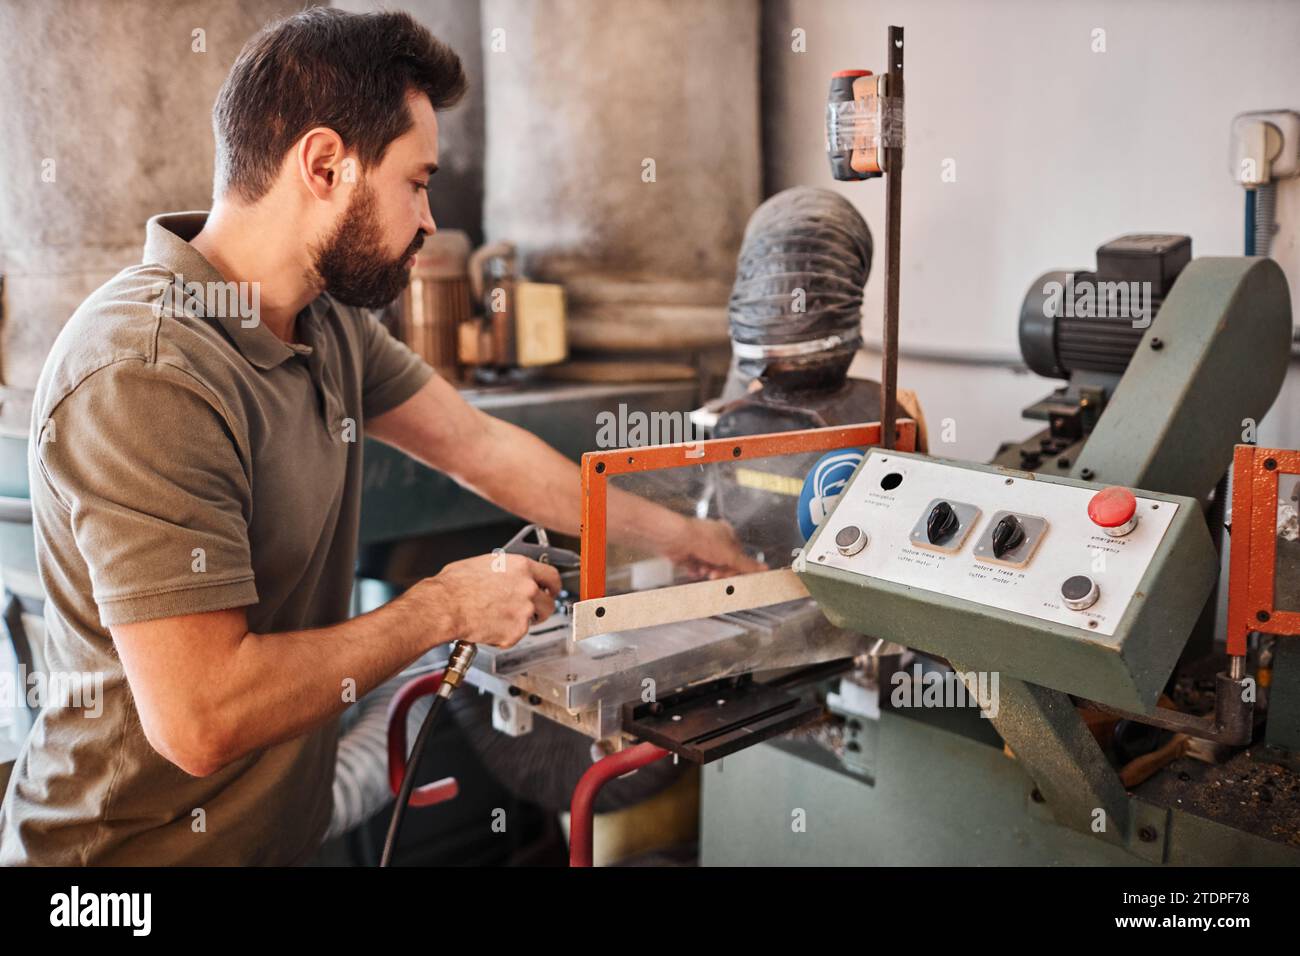 Junger männlicher Hersteller, der industrielle Maschinen für die Schuhherstellung verwendet, während er Leder oder unfertige Schuhe in der Werkstatt verarbeitet Stockfoto